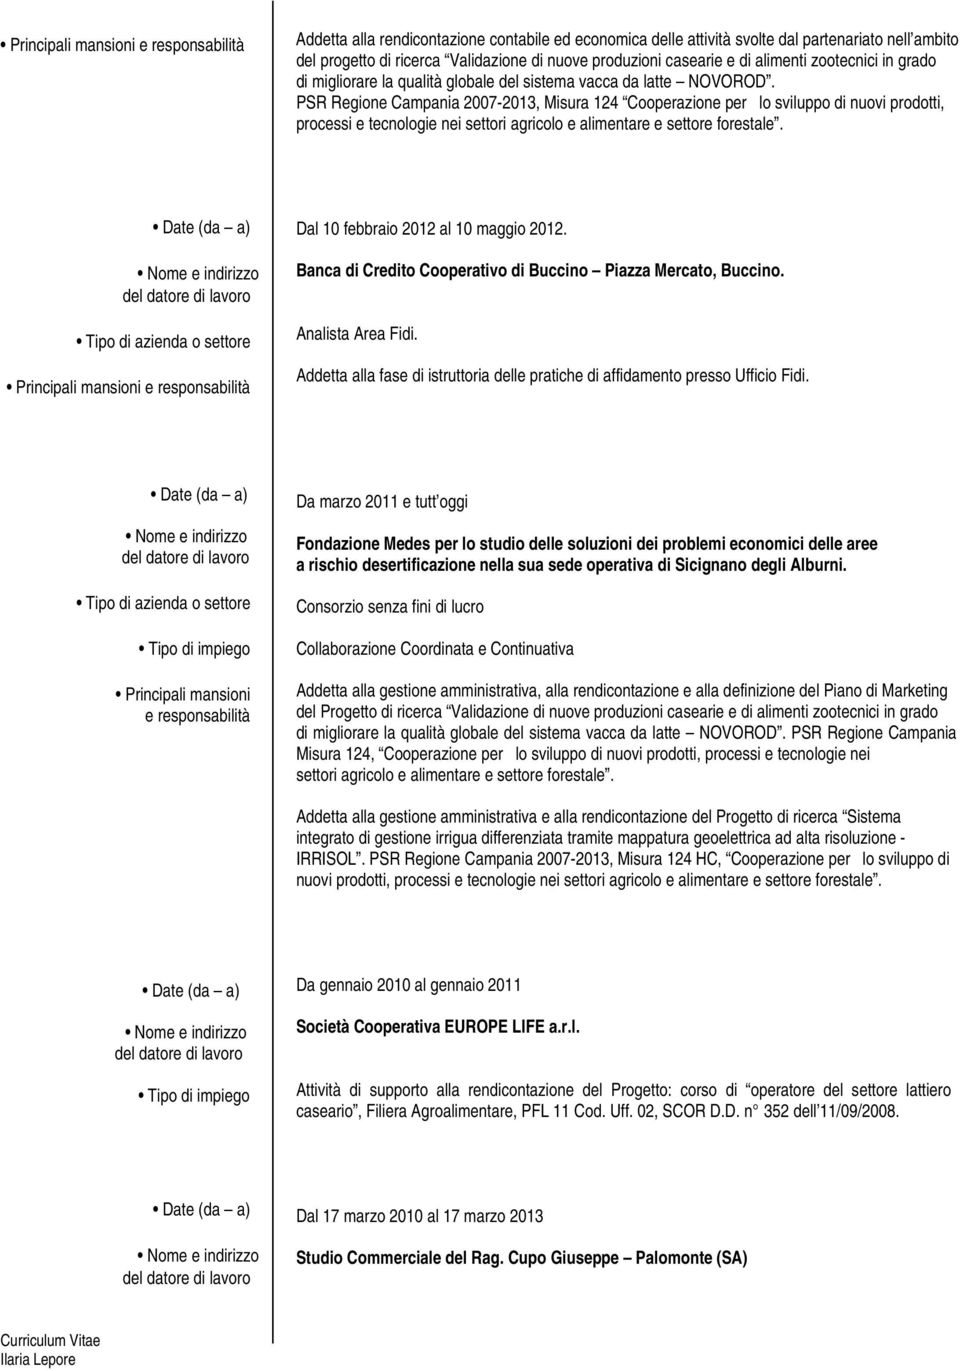 PSR Regione Campania 2007-2013, Misura 124 Cooperazione per lo sviluppo di nuovi prodotti, processi e tecnologie nei settori agricolo e alimentare e settore forestale.